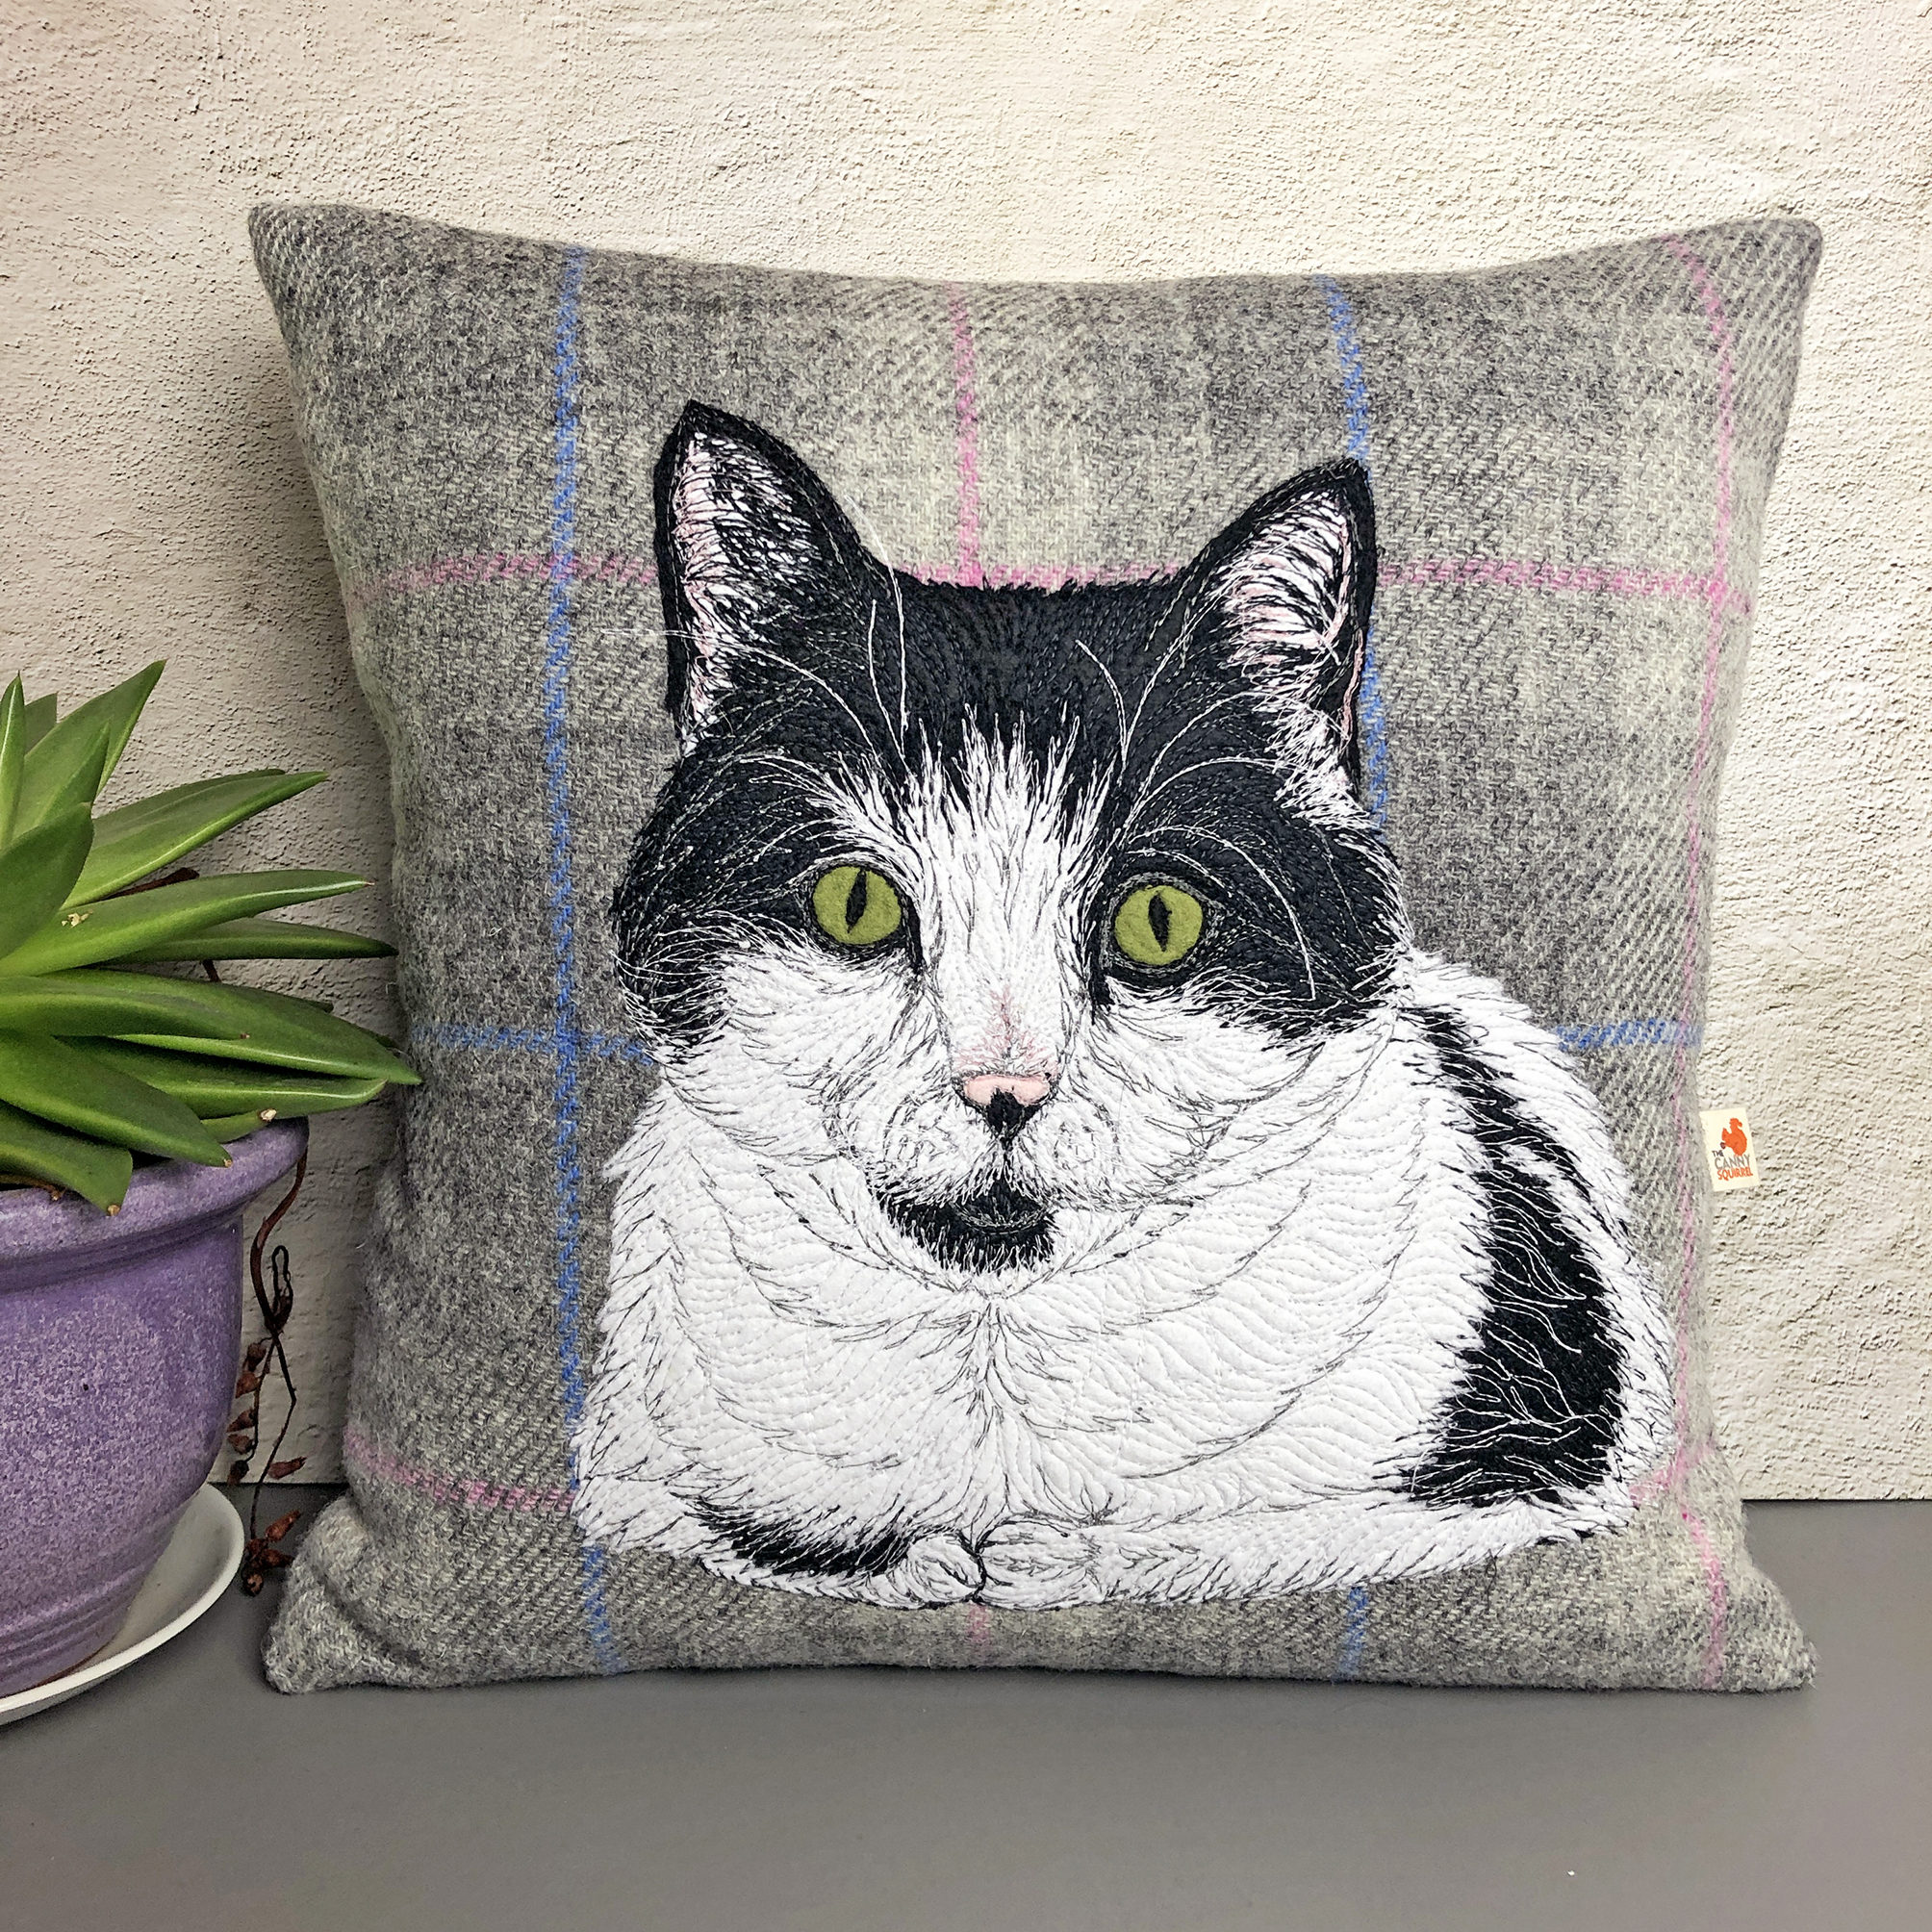 Cat portrait cushion commission